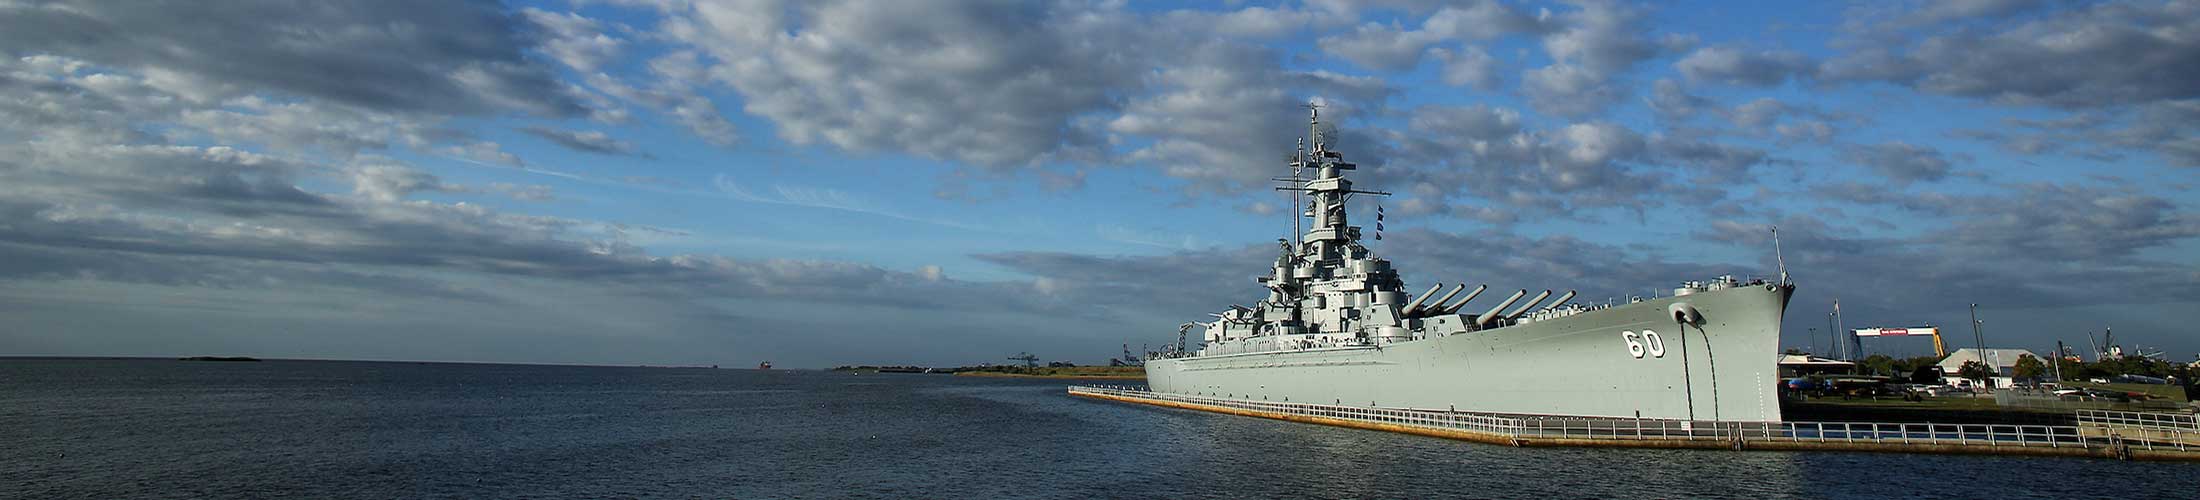 Battleship on Mobile Bay